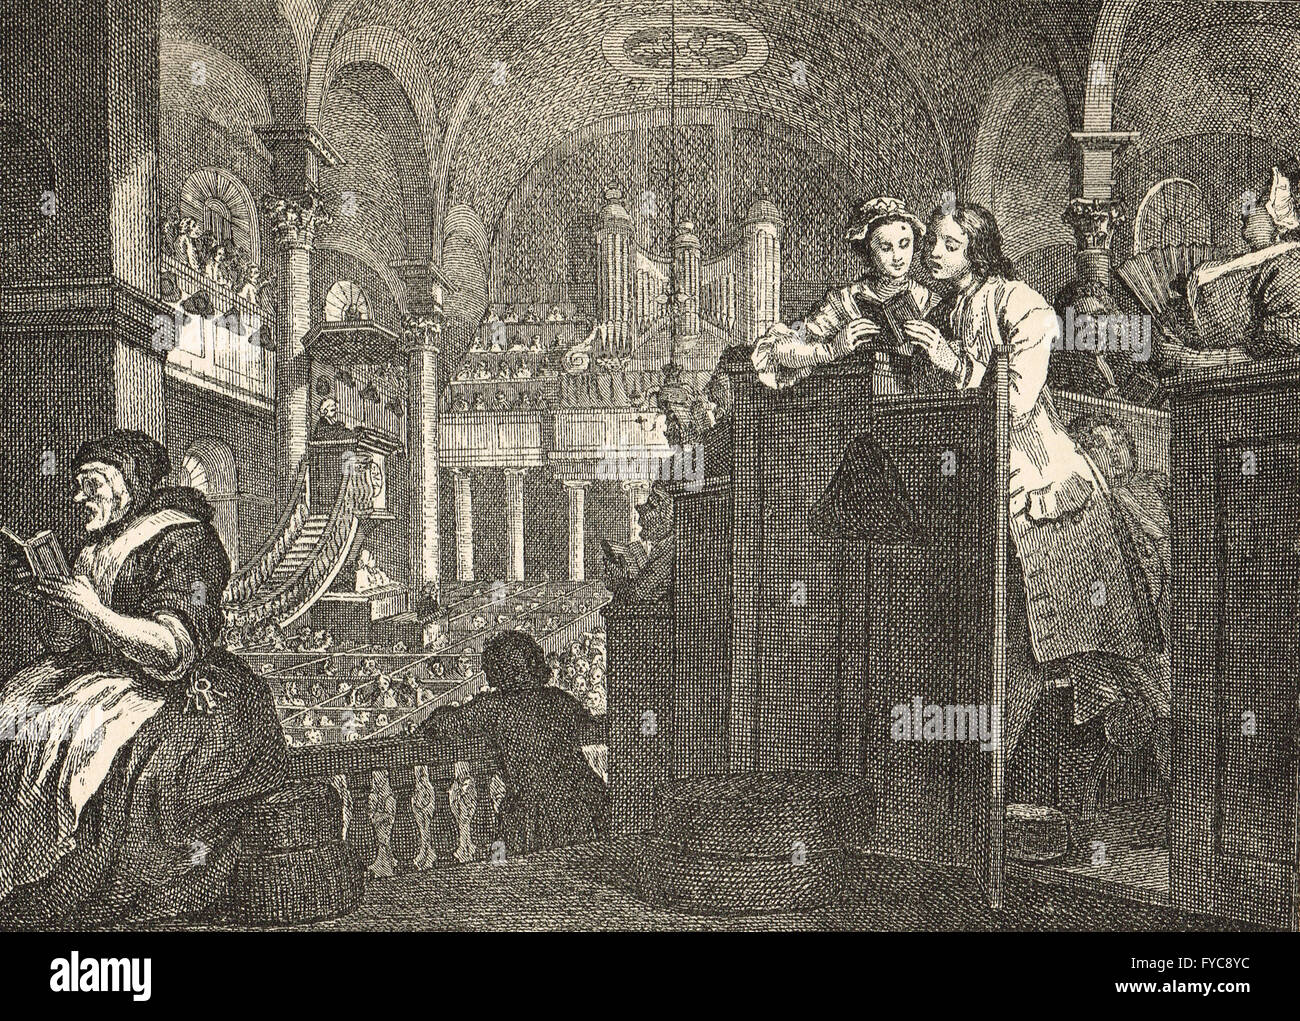 L'industrie et de l'oisiveté planche 2 Le travailleur 'Prentice l'exécution de l'obligation d'un chrétien par William Hogarth circa 1747 Banque D'Images